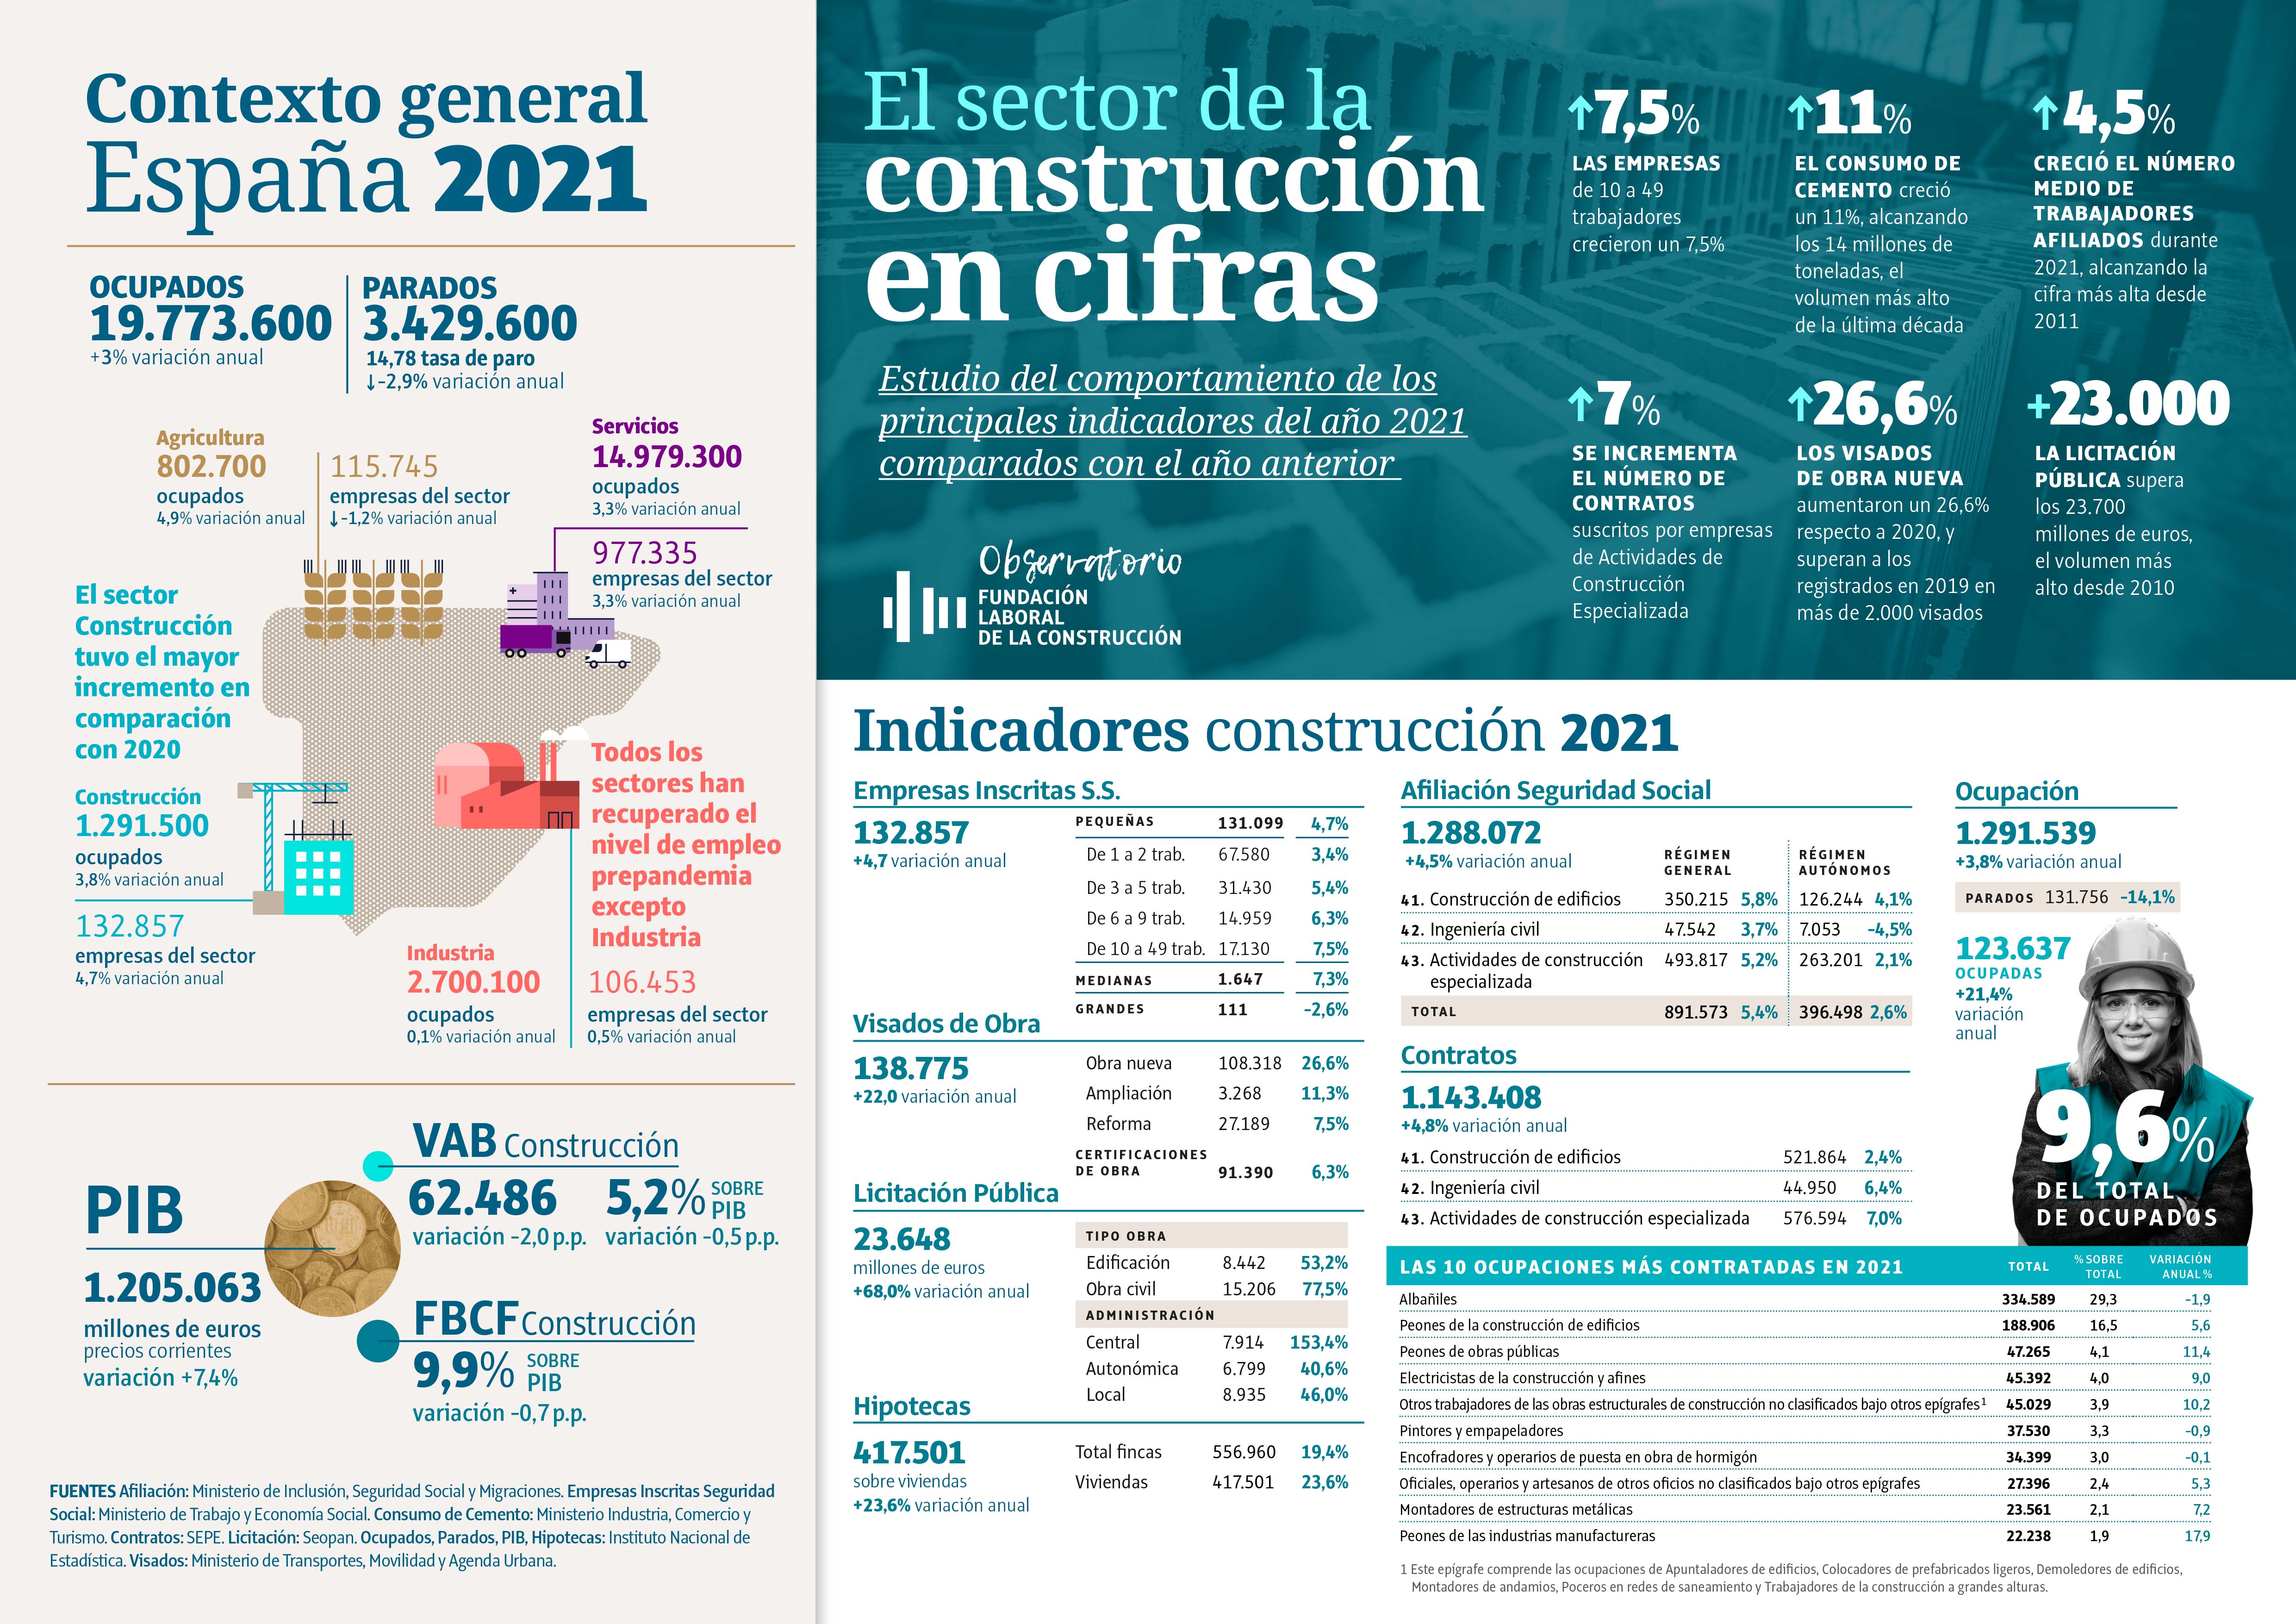 El sector de la construcción sigue creciendo y aumenta casi un 5% el número de empresas